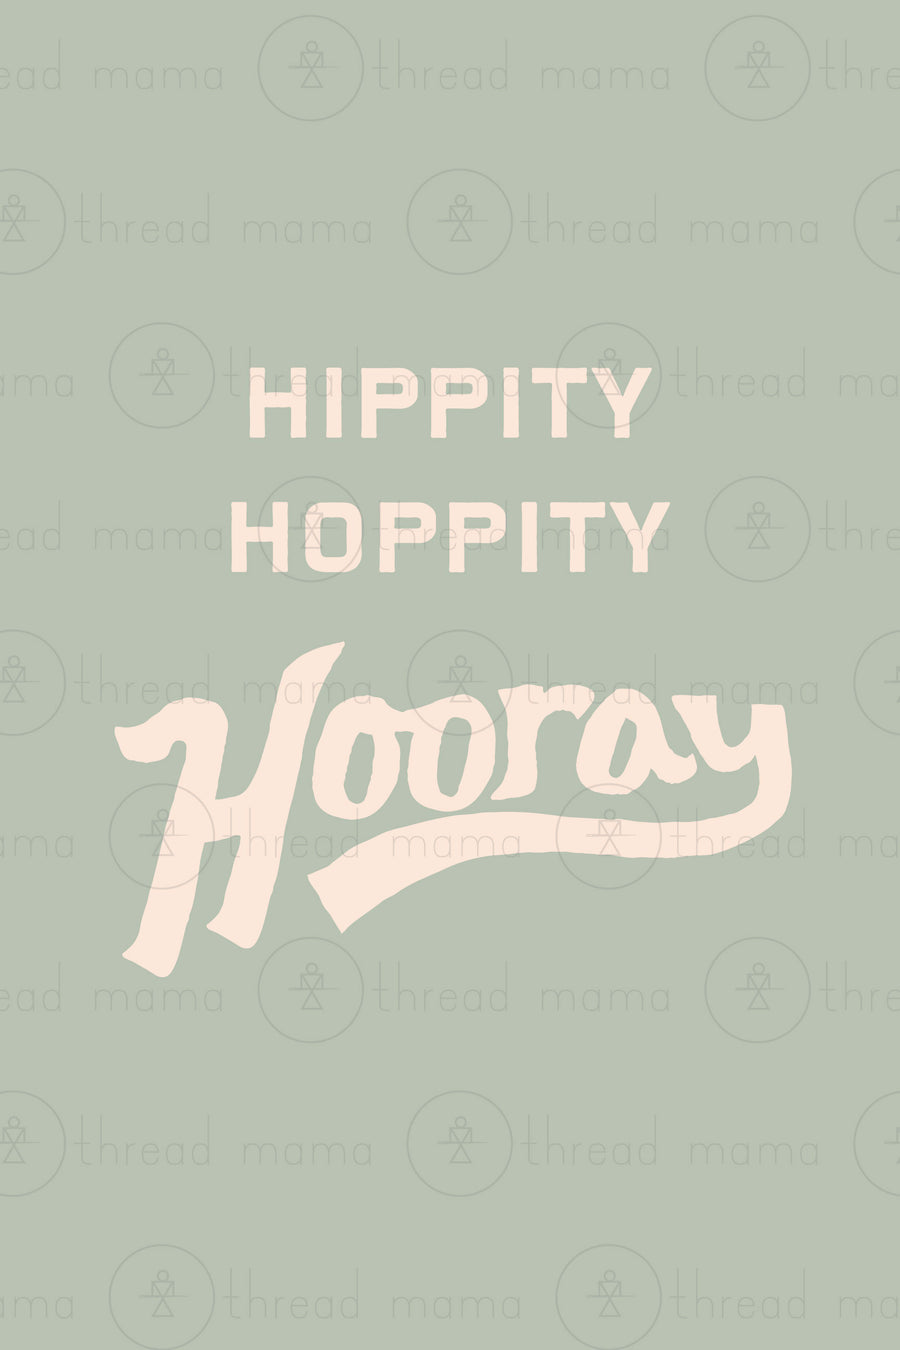 Hippity Hoppity Hooray